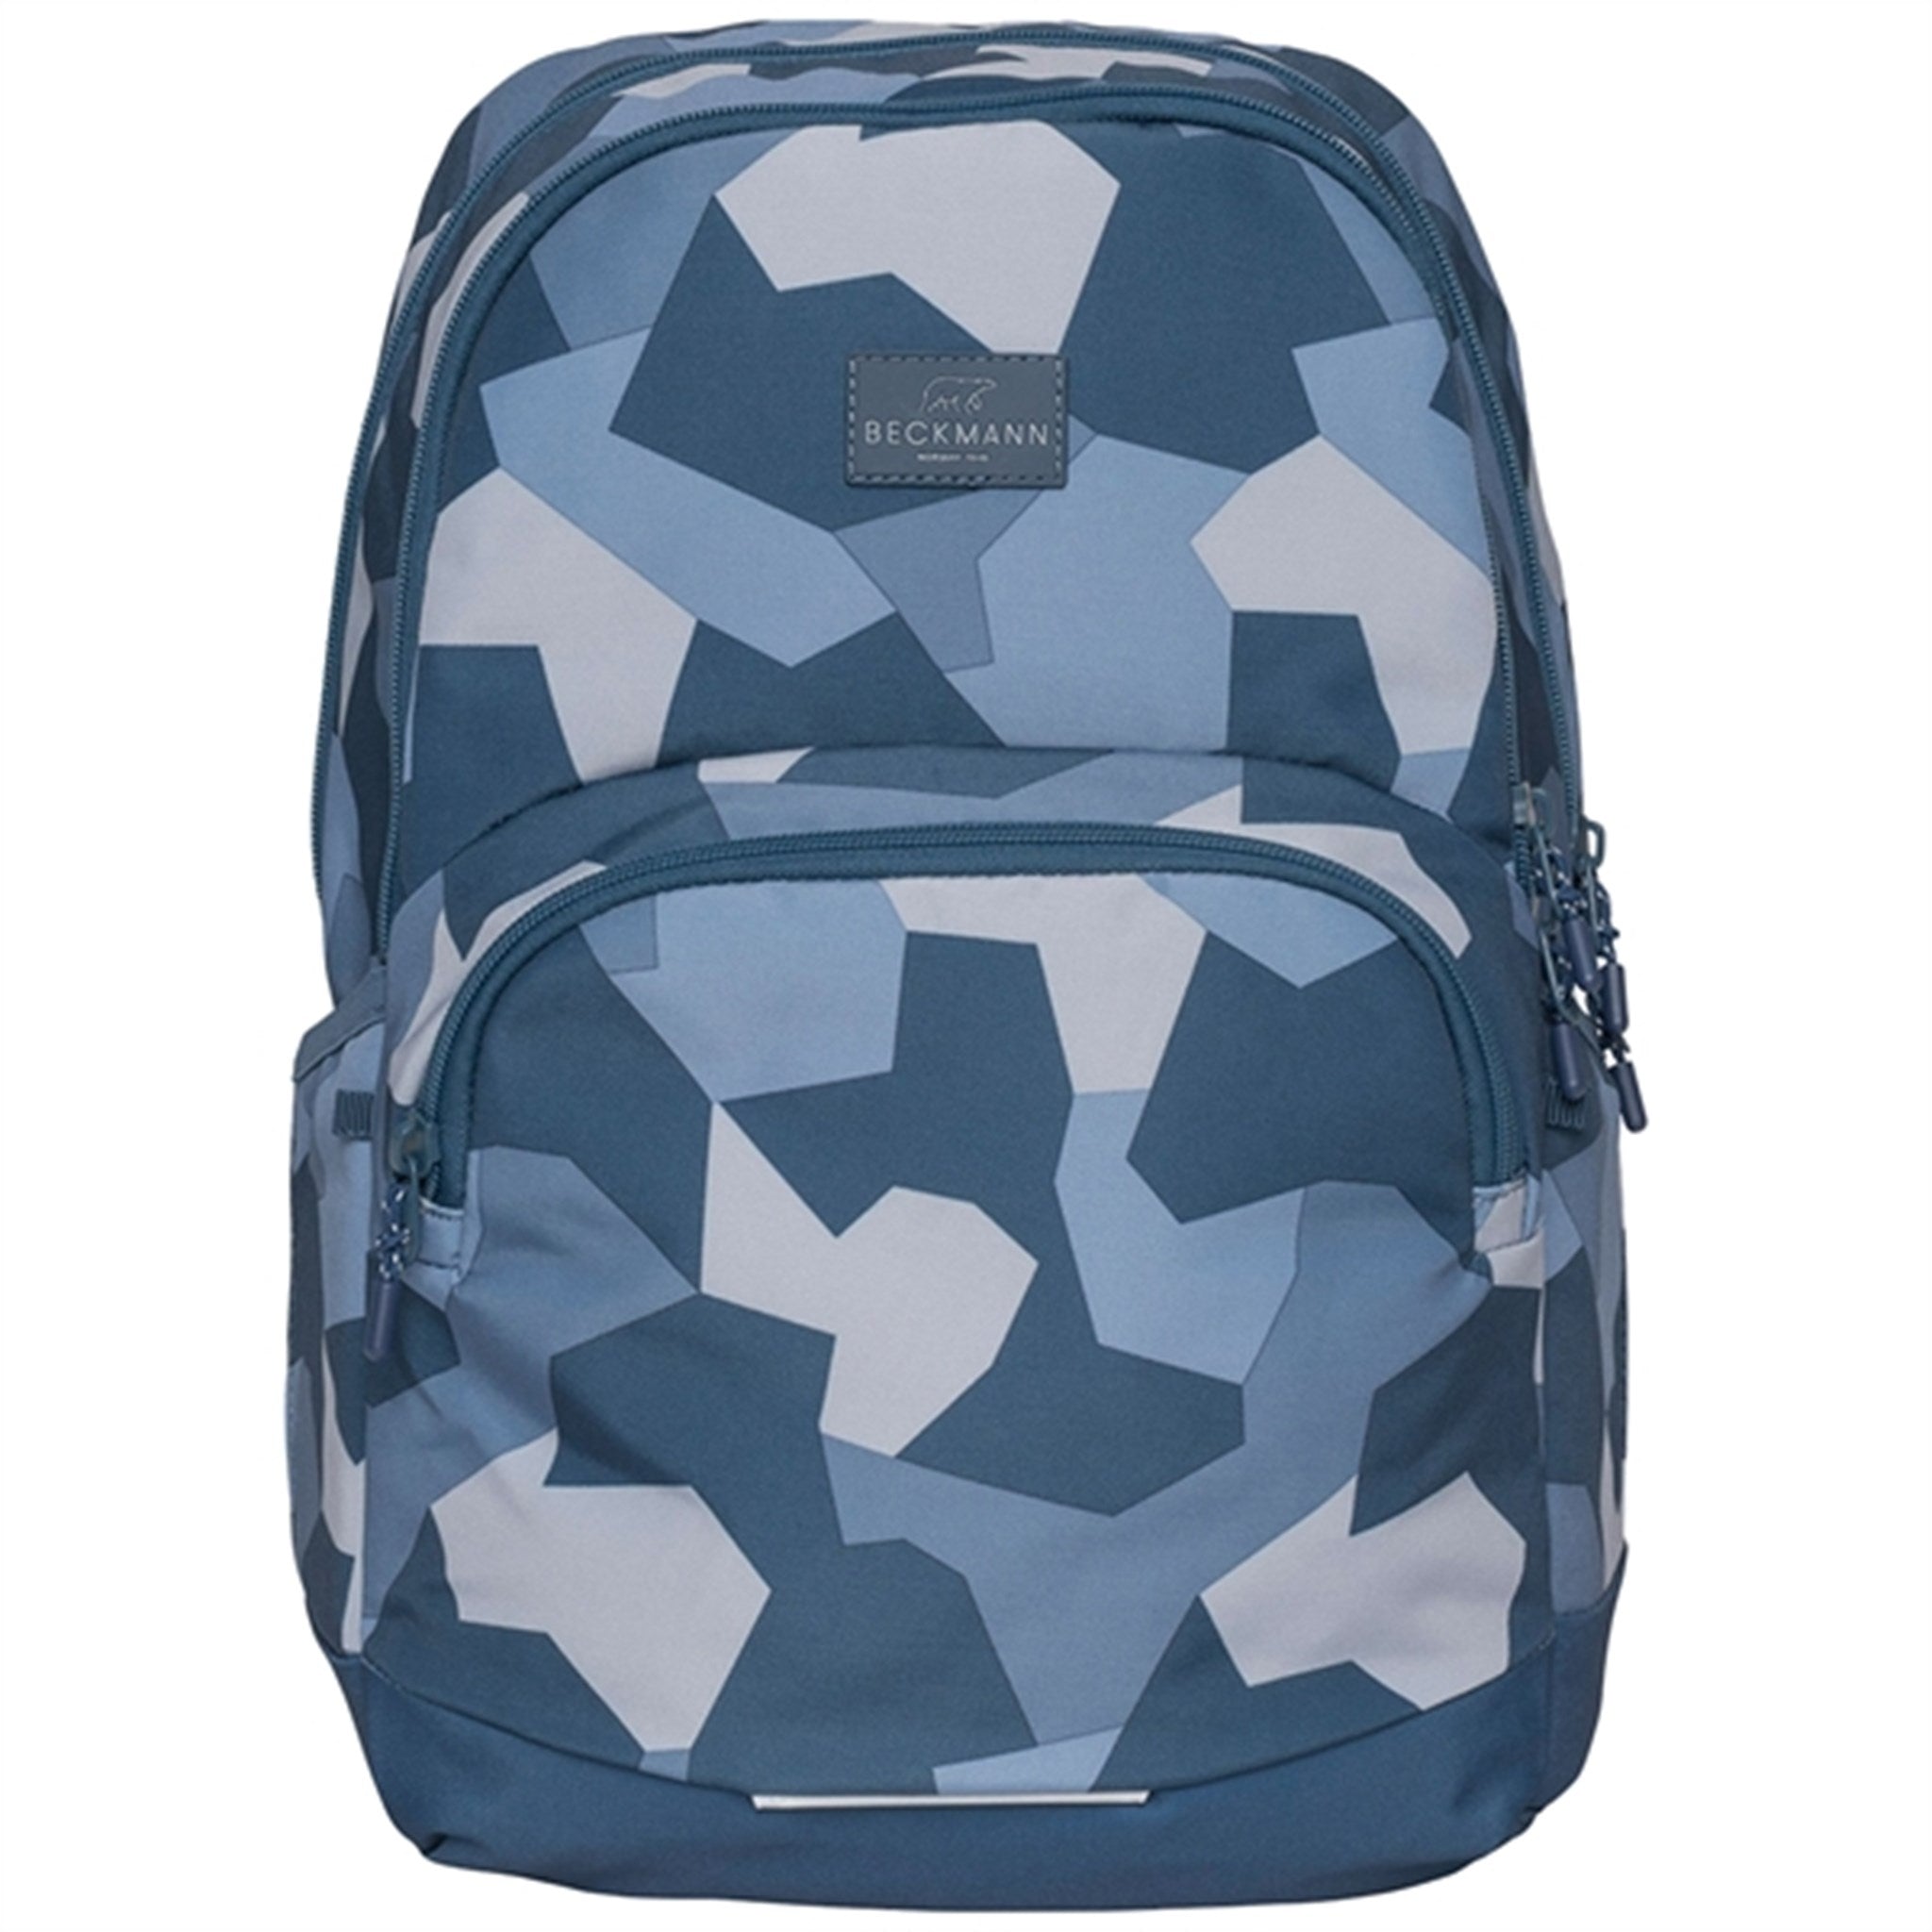 Beckmann Sport Junior Backpack Blue Camo